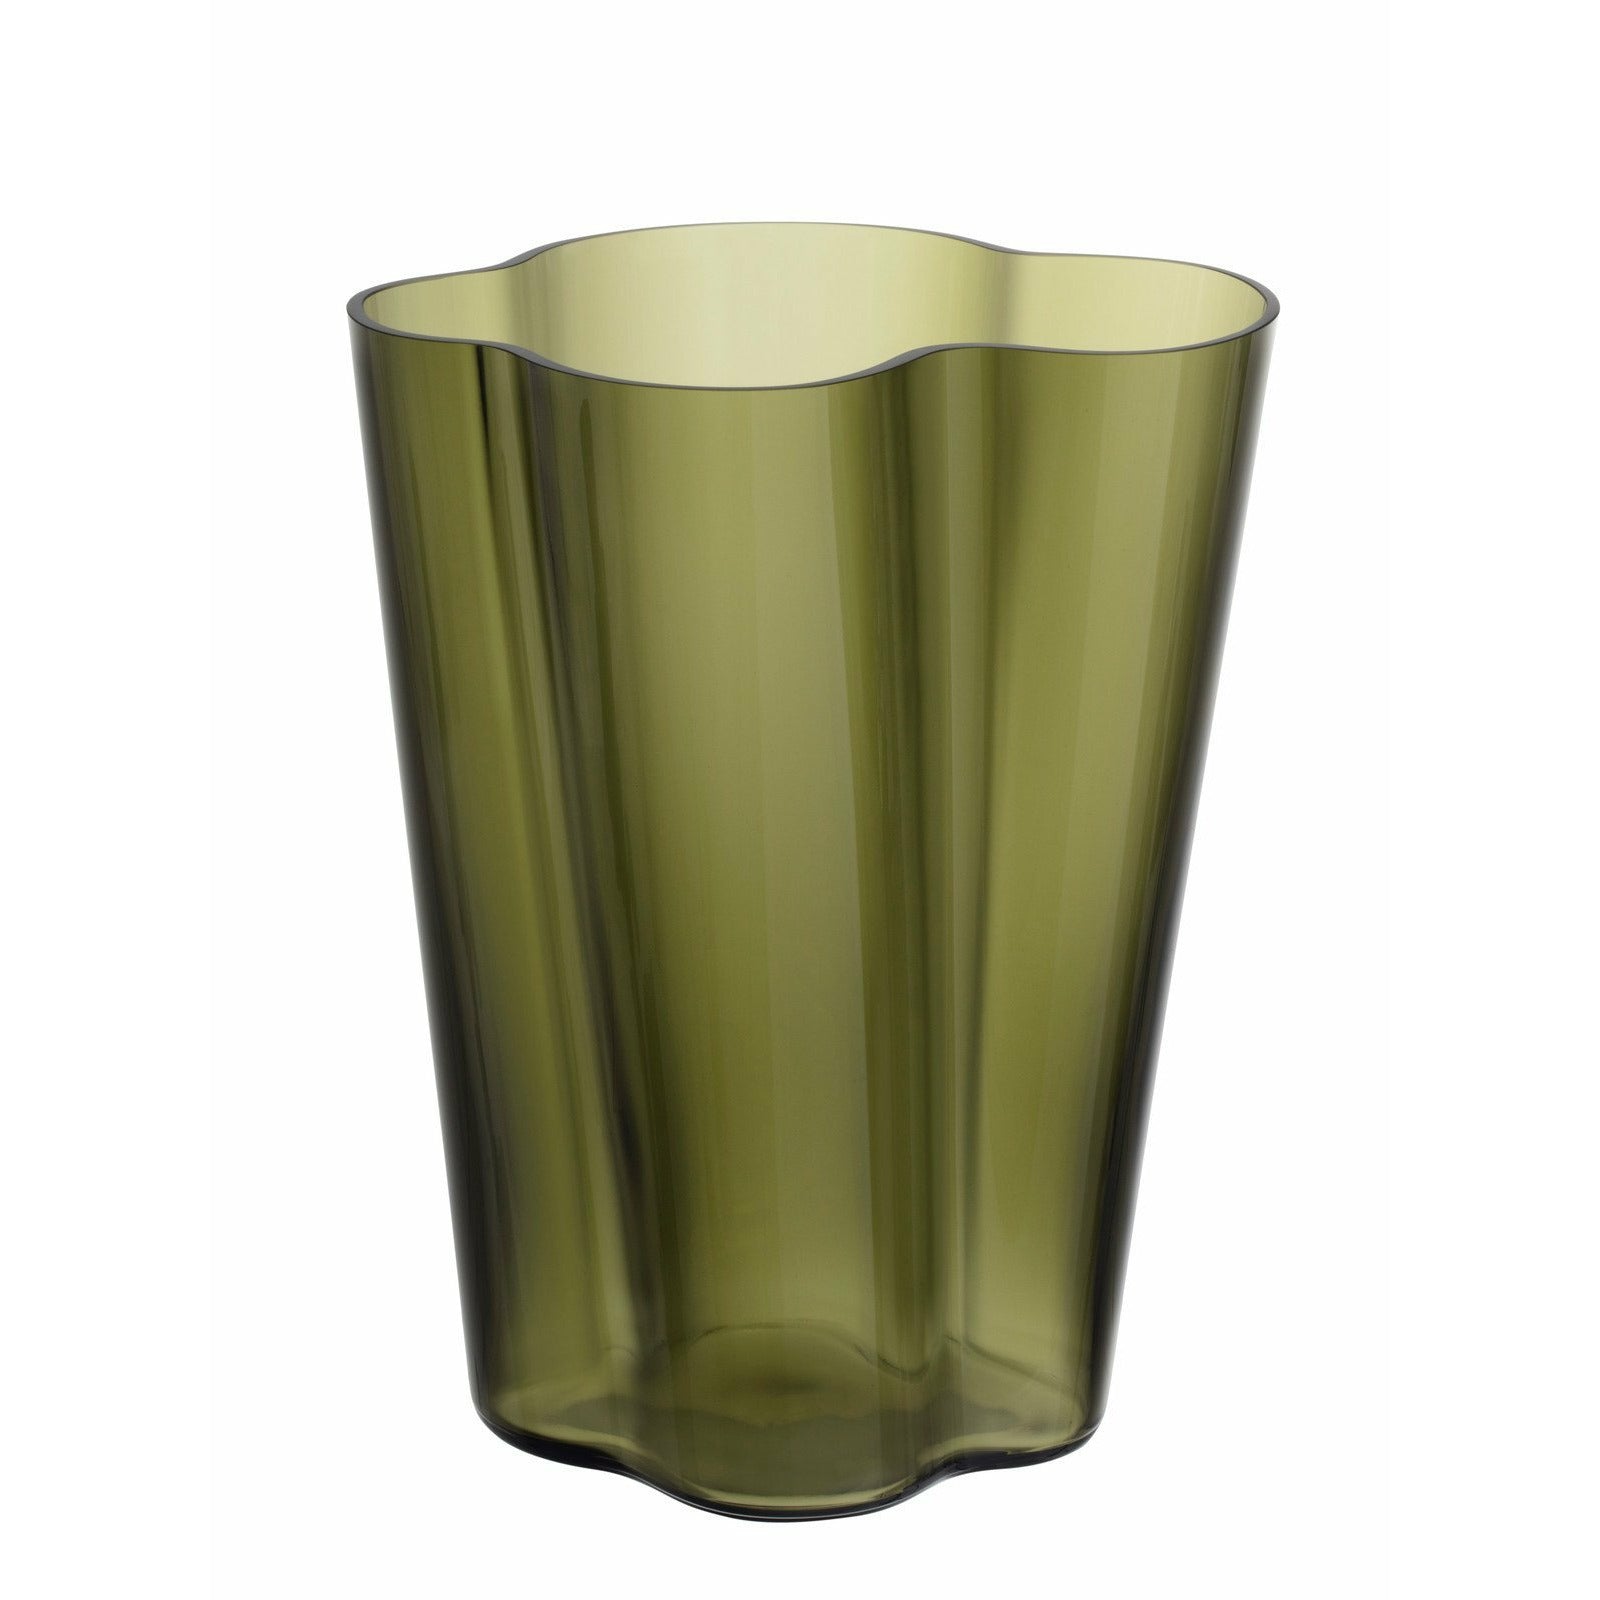 Iittala aalto vases musgo verde, 27 cm